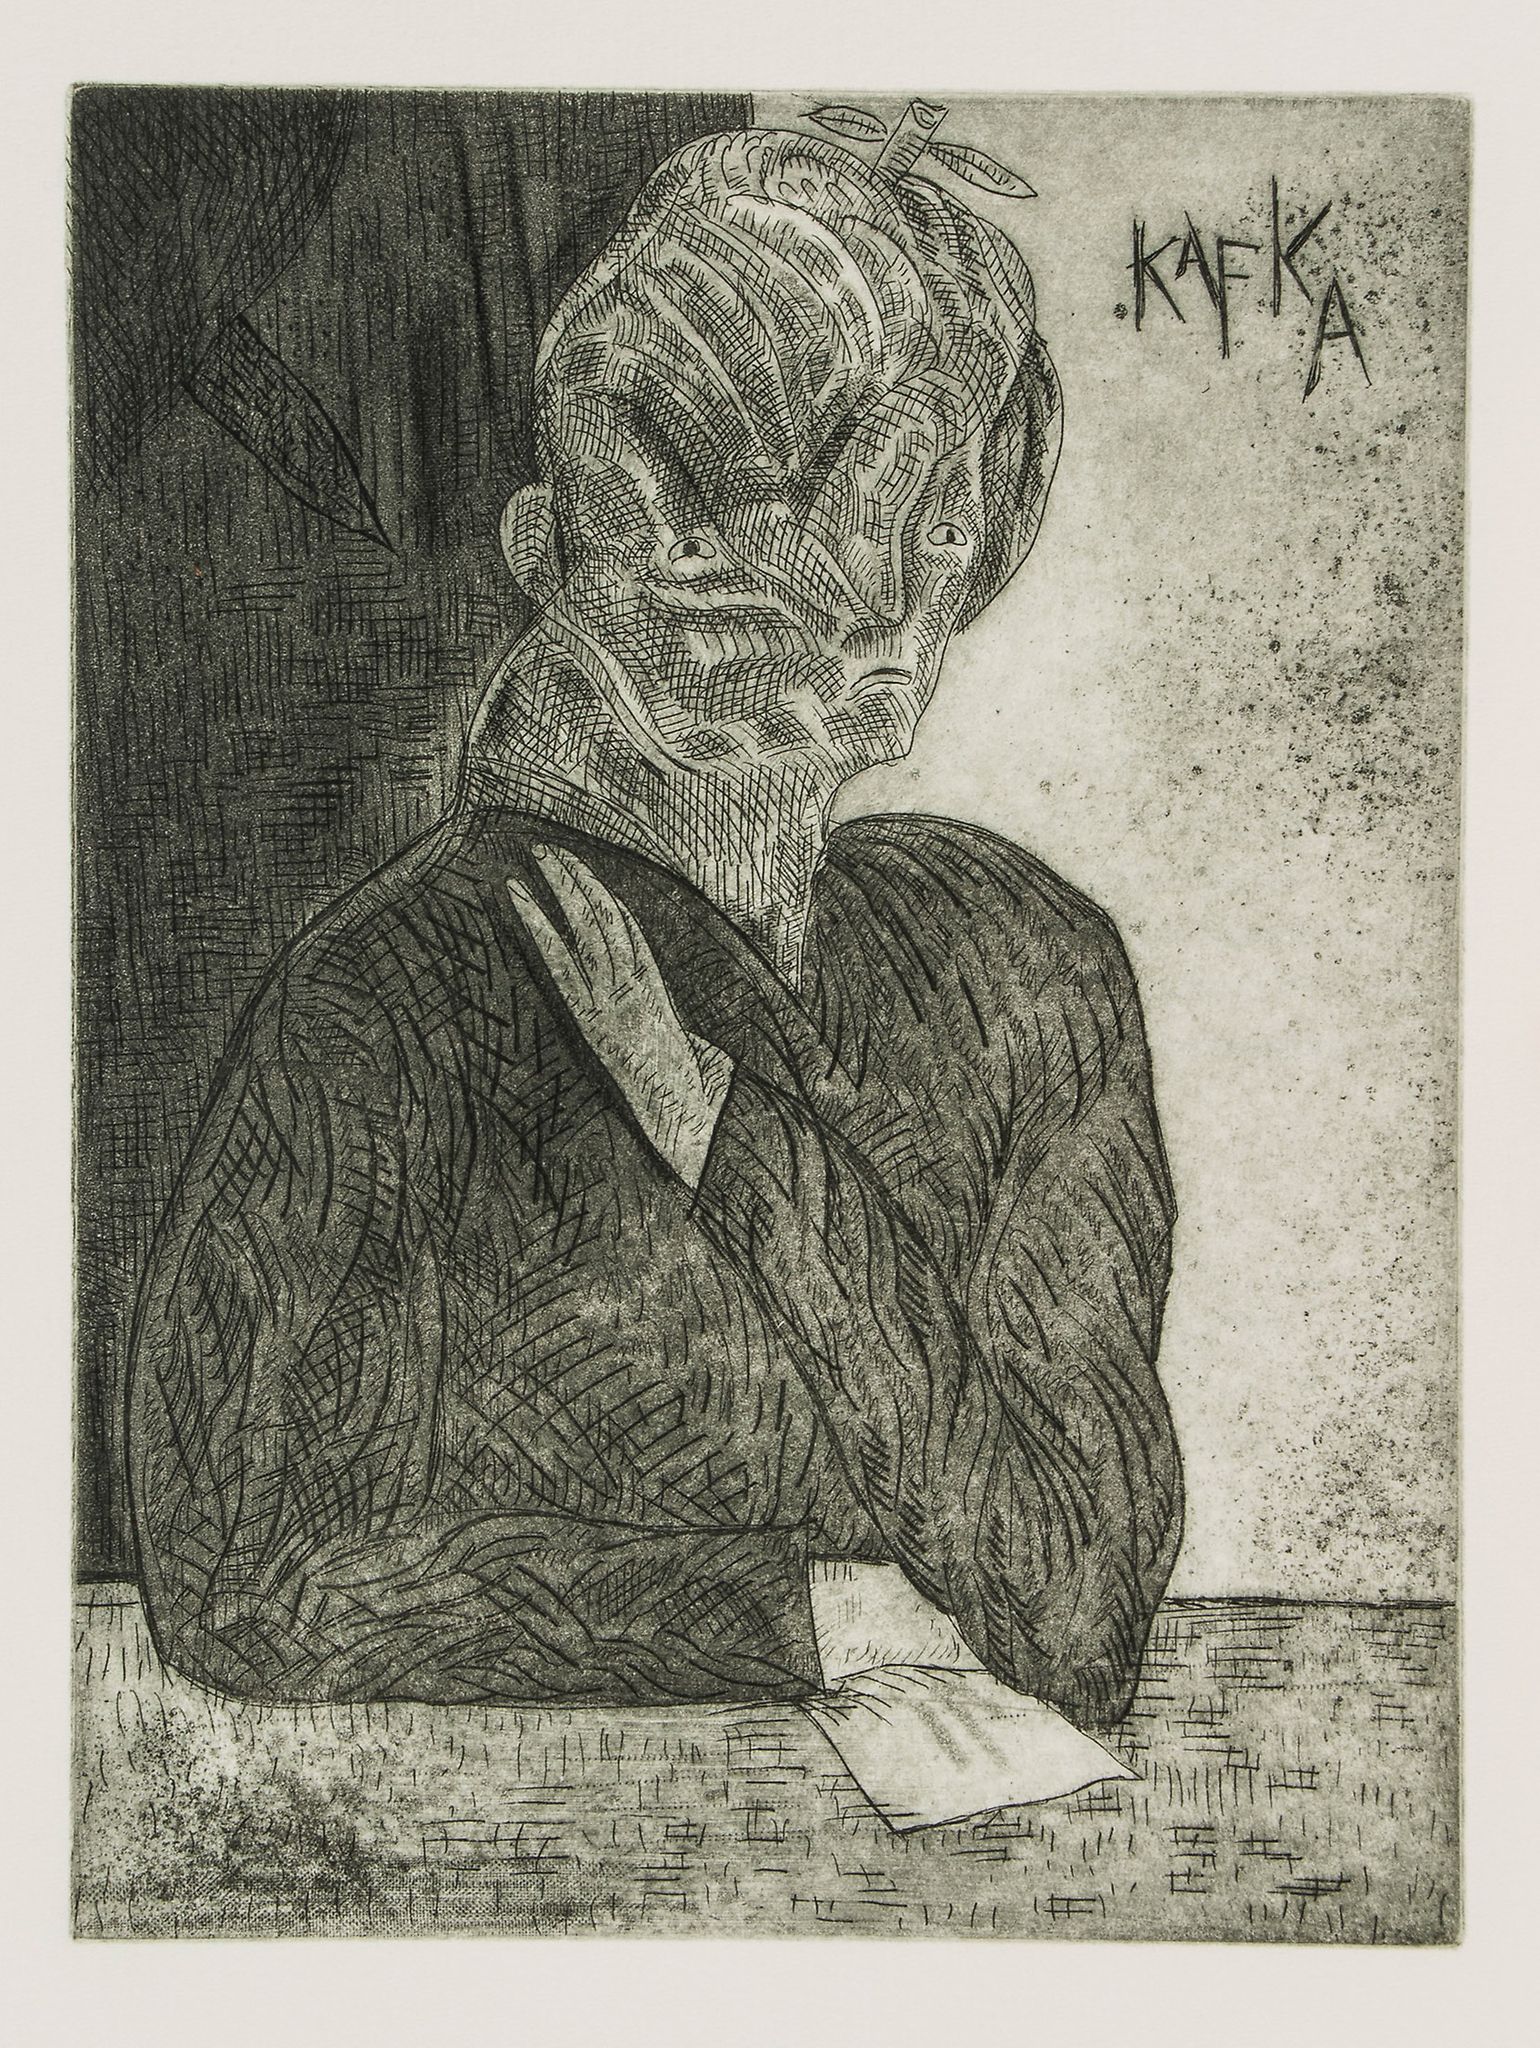 Kafka (Franz) - Metamorphosis,  etchings by José Luis Cuevas, original morocco-backed boards,   1984